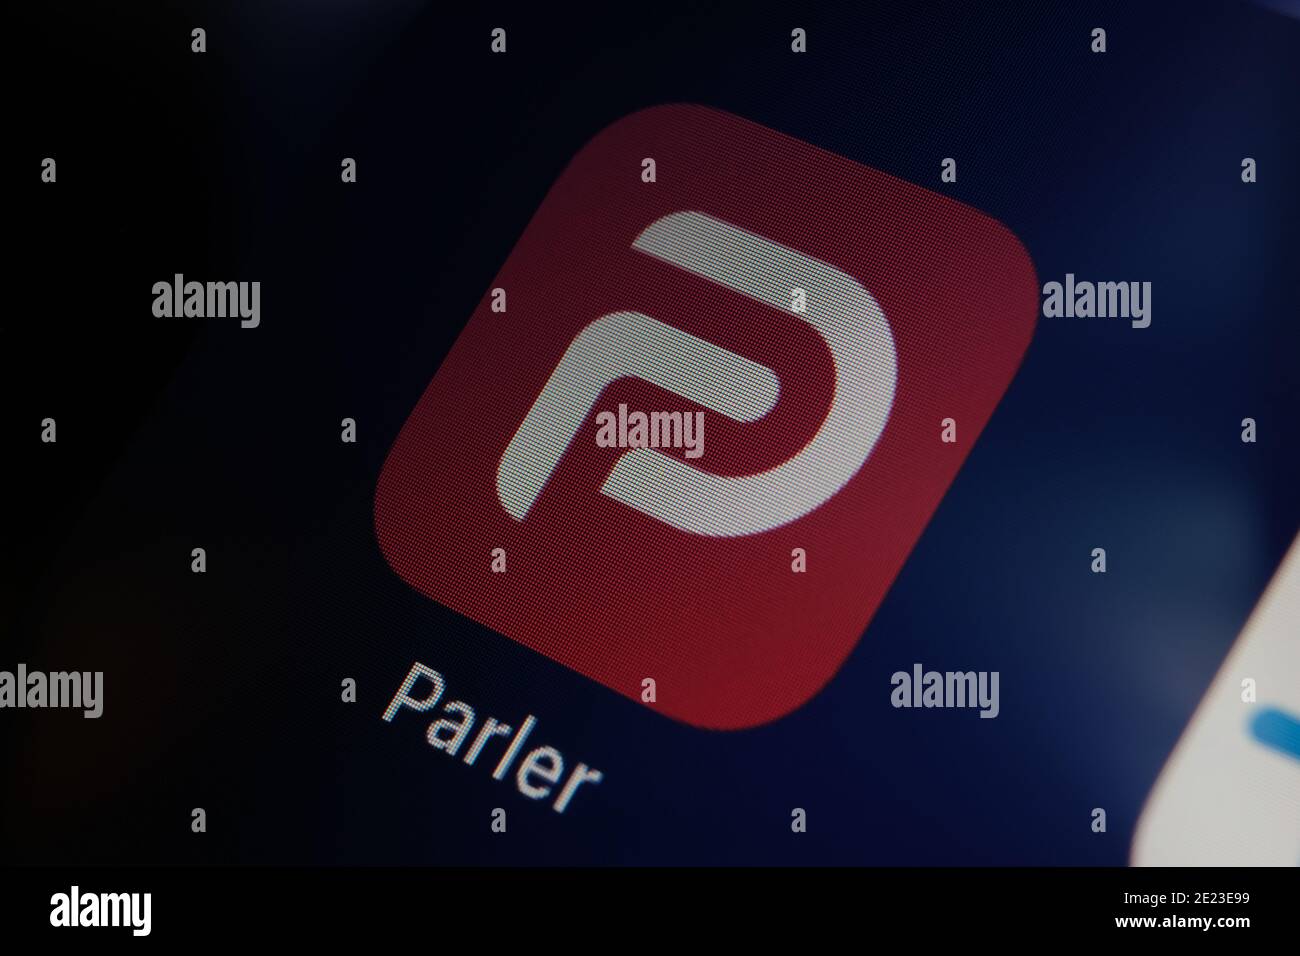 Parler App-Logo auf dem Bildschirm des iPad zu sehen. Parler ist eine Social-Media-Plattform, die in den USA verboten ist. Stockfoto